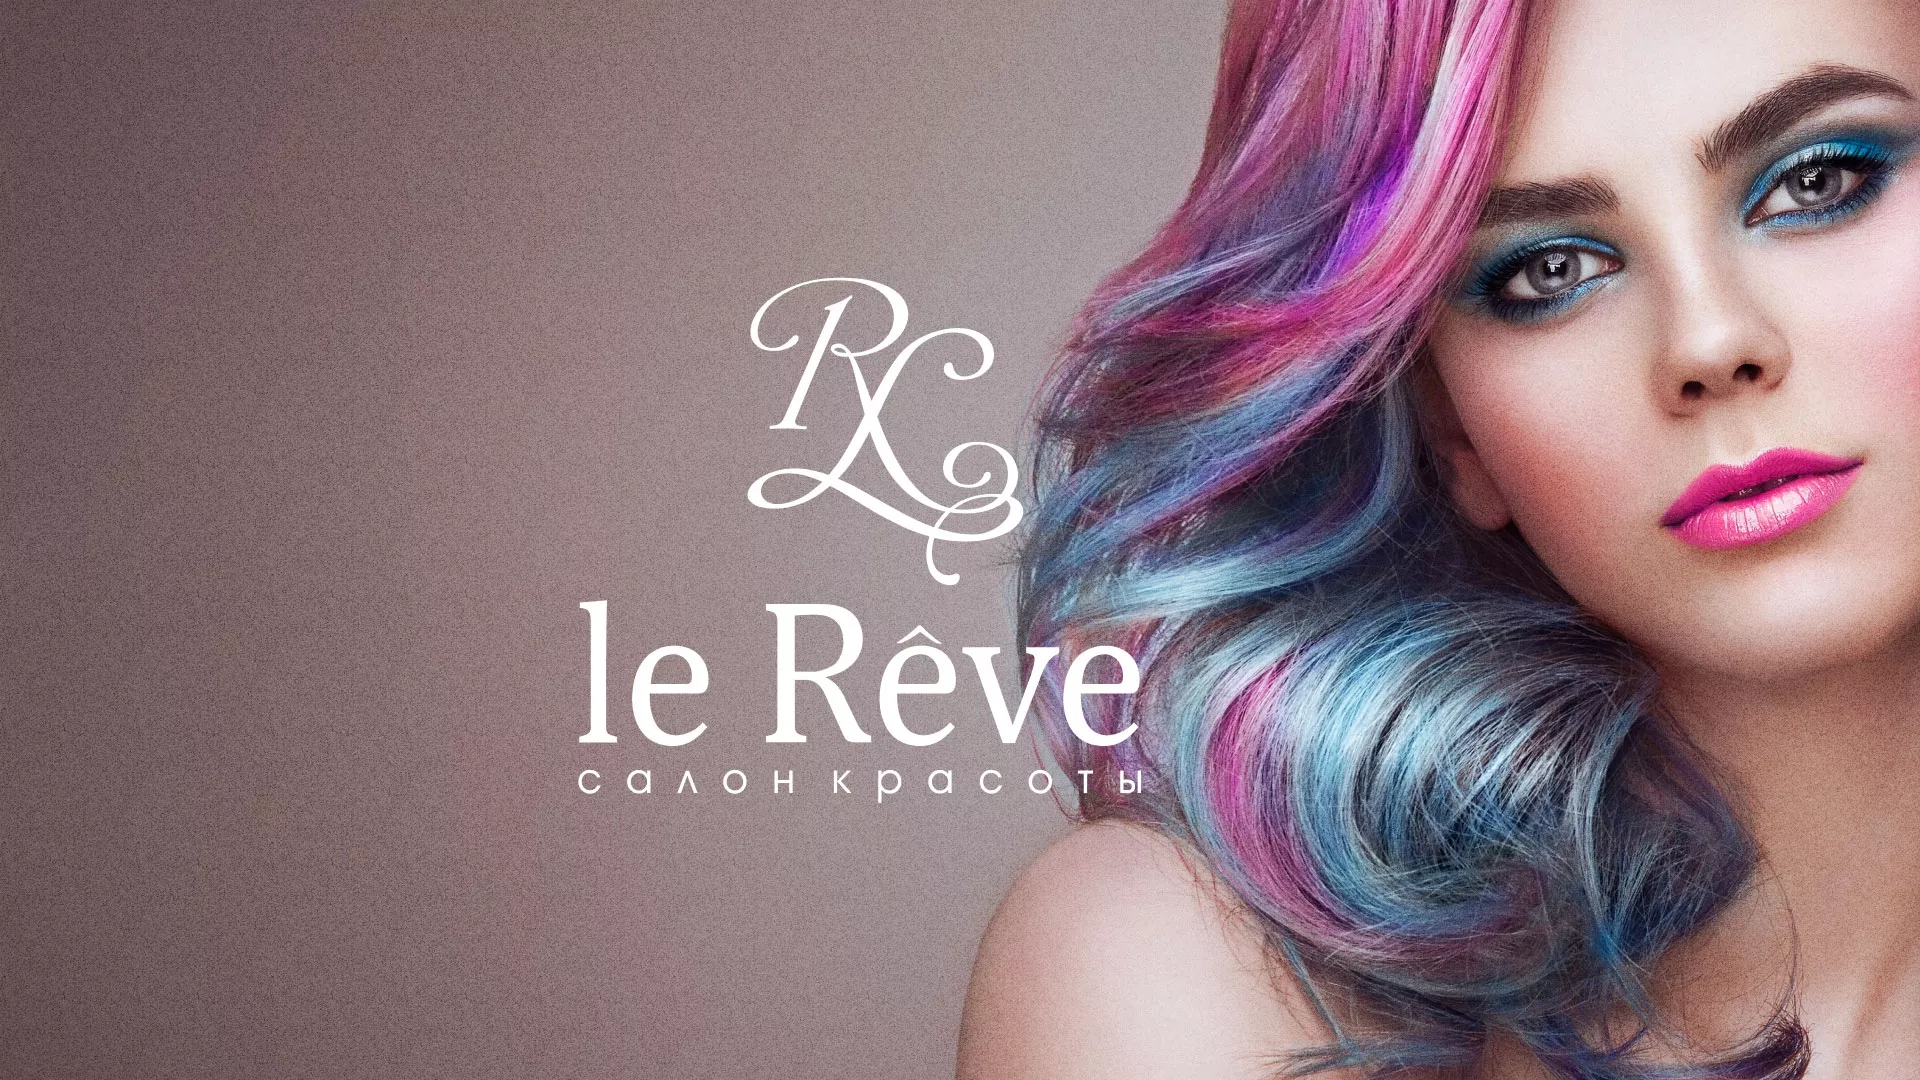 Создание сайта для салона красоты «Le Reve» в Шлиссельбурге